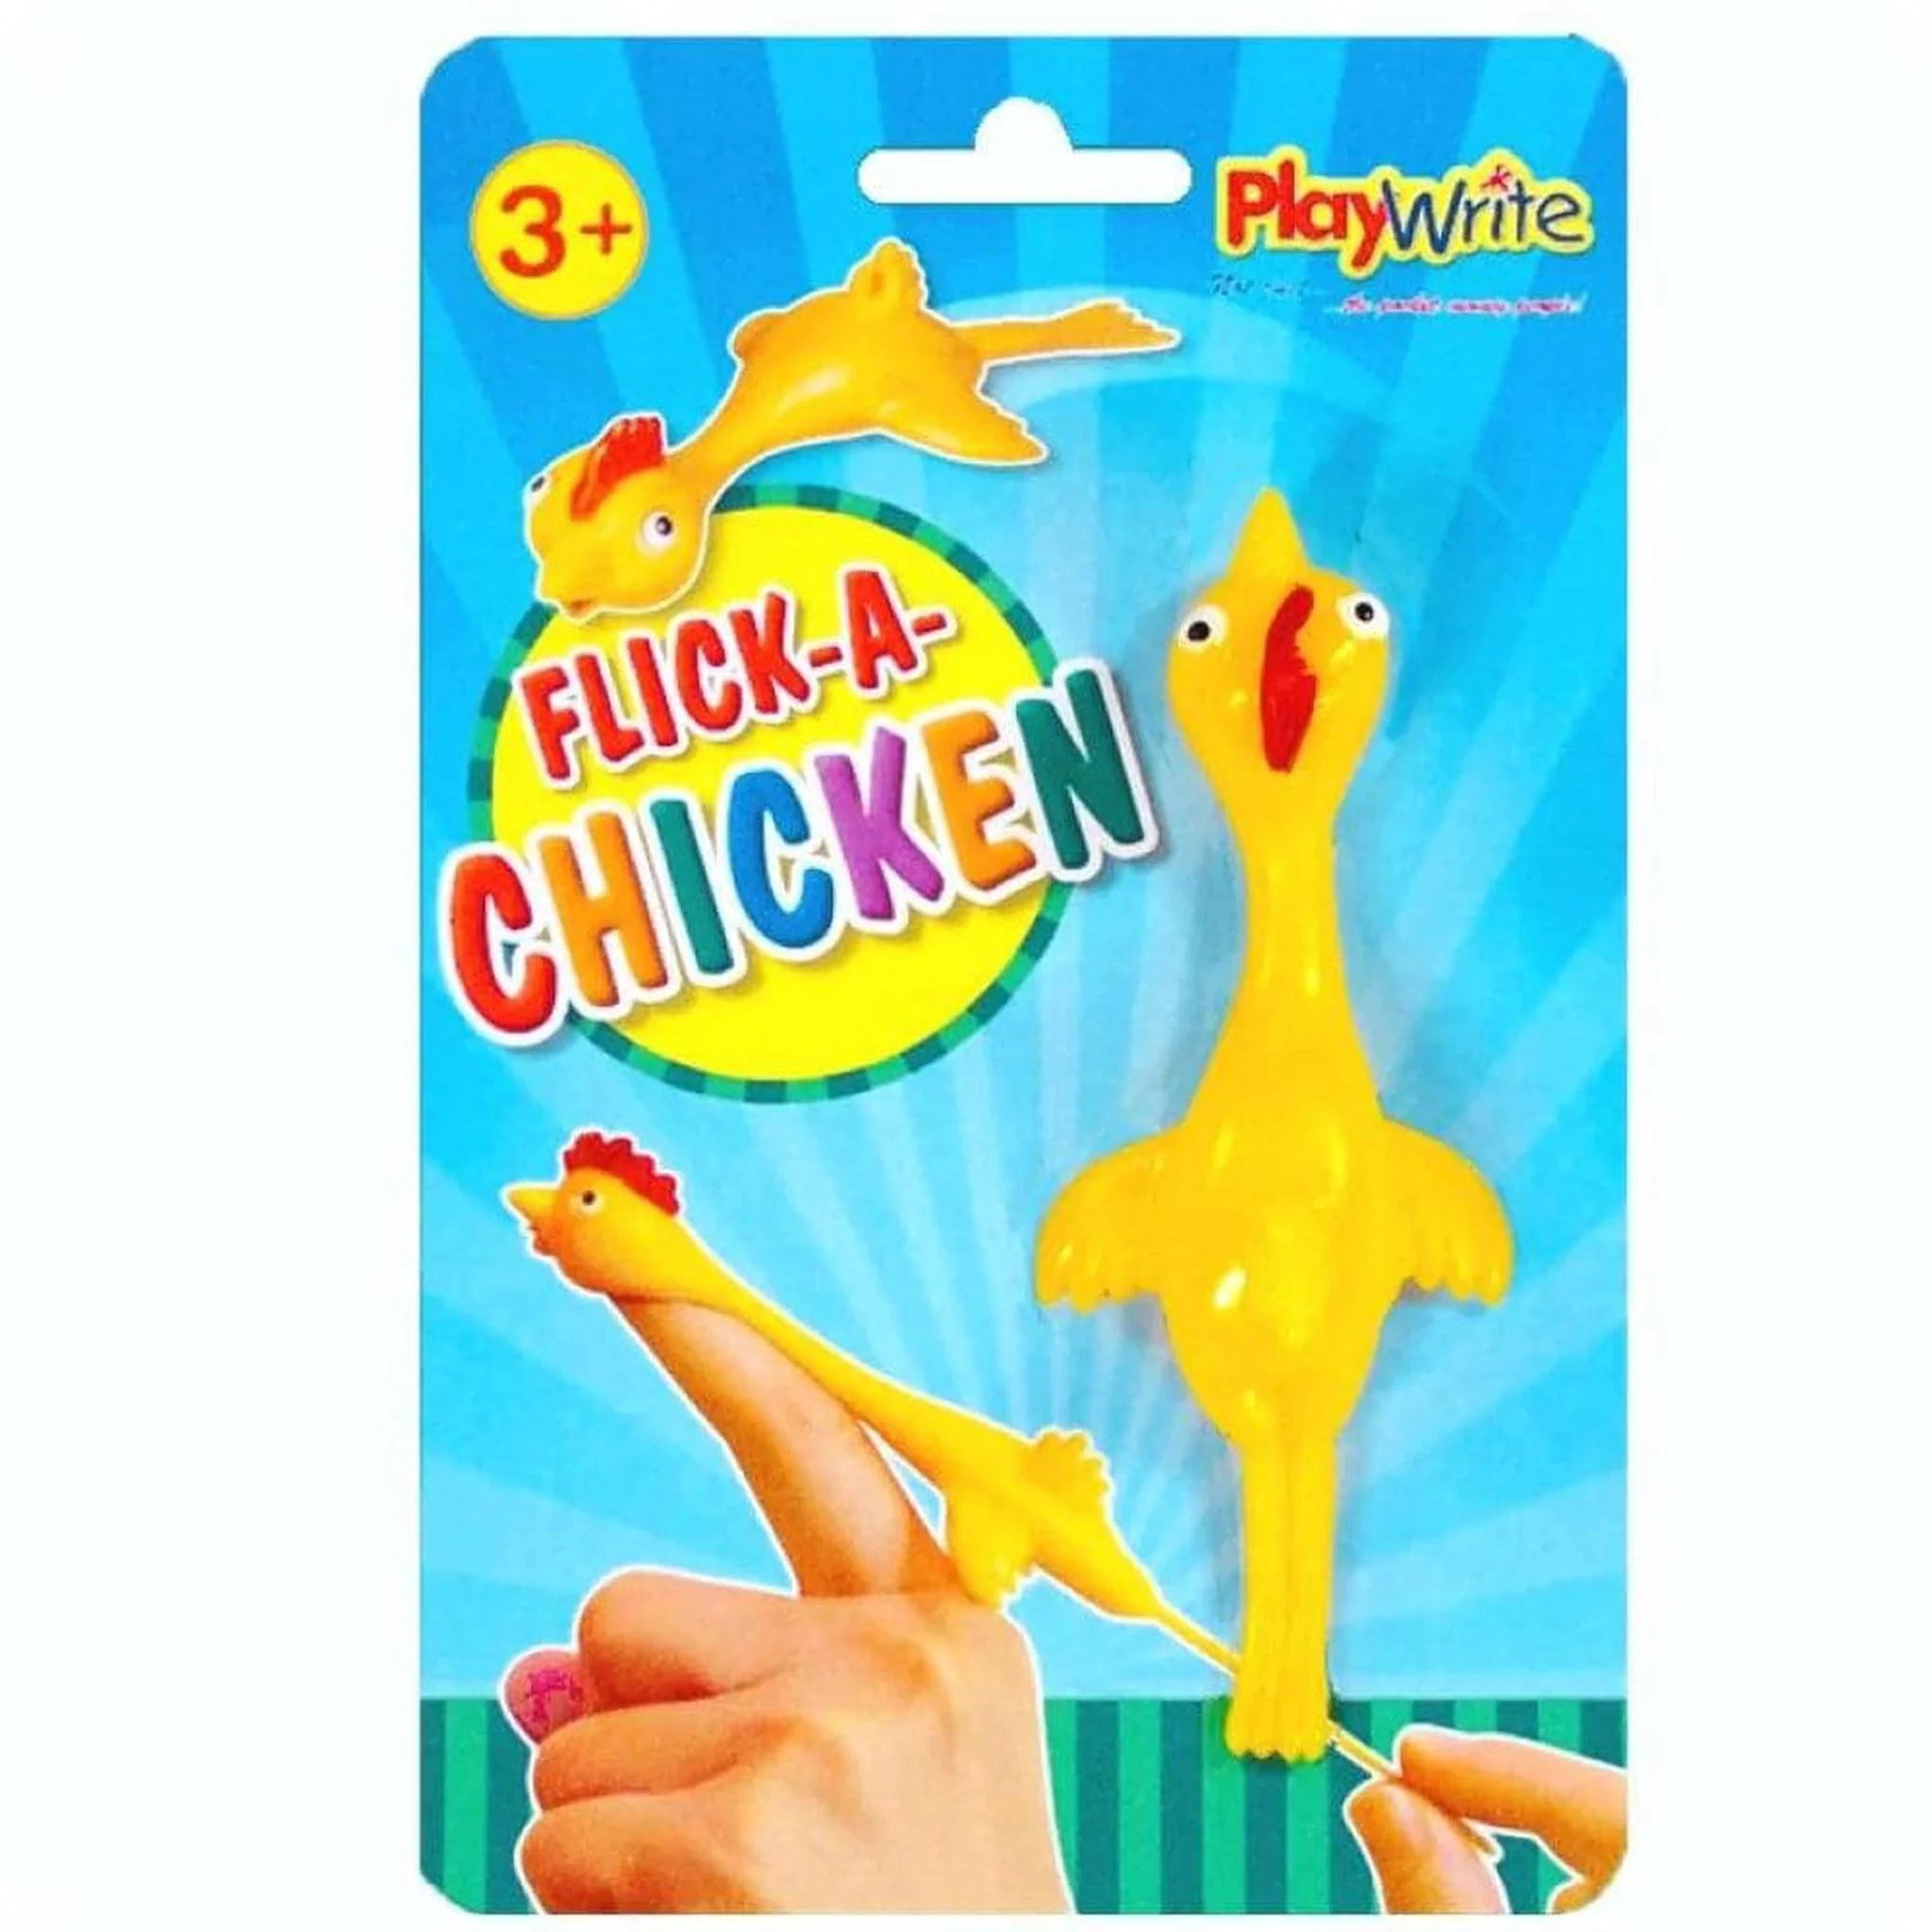 Flick-a-Chicken - PoundToys